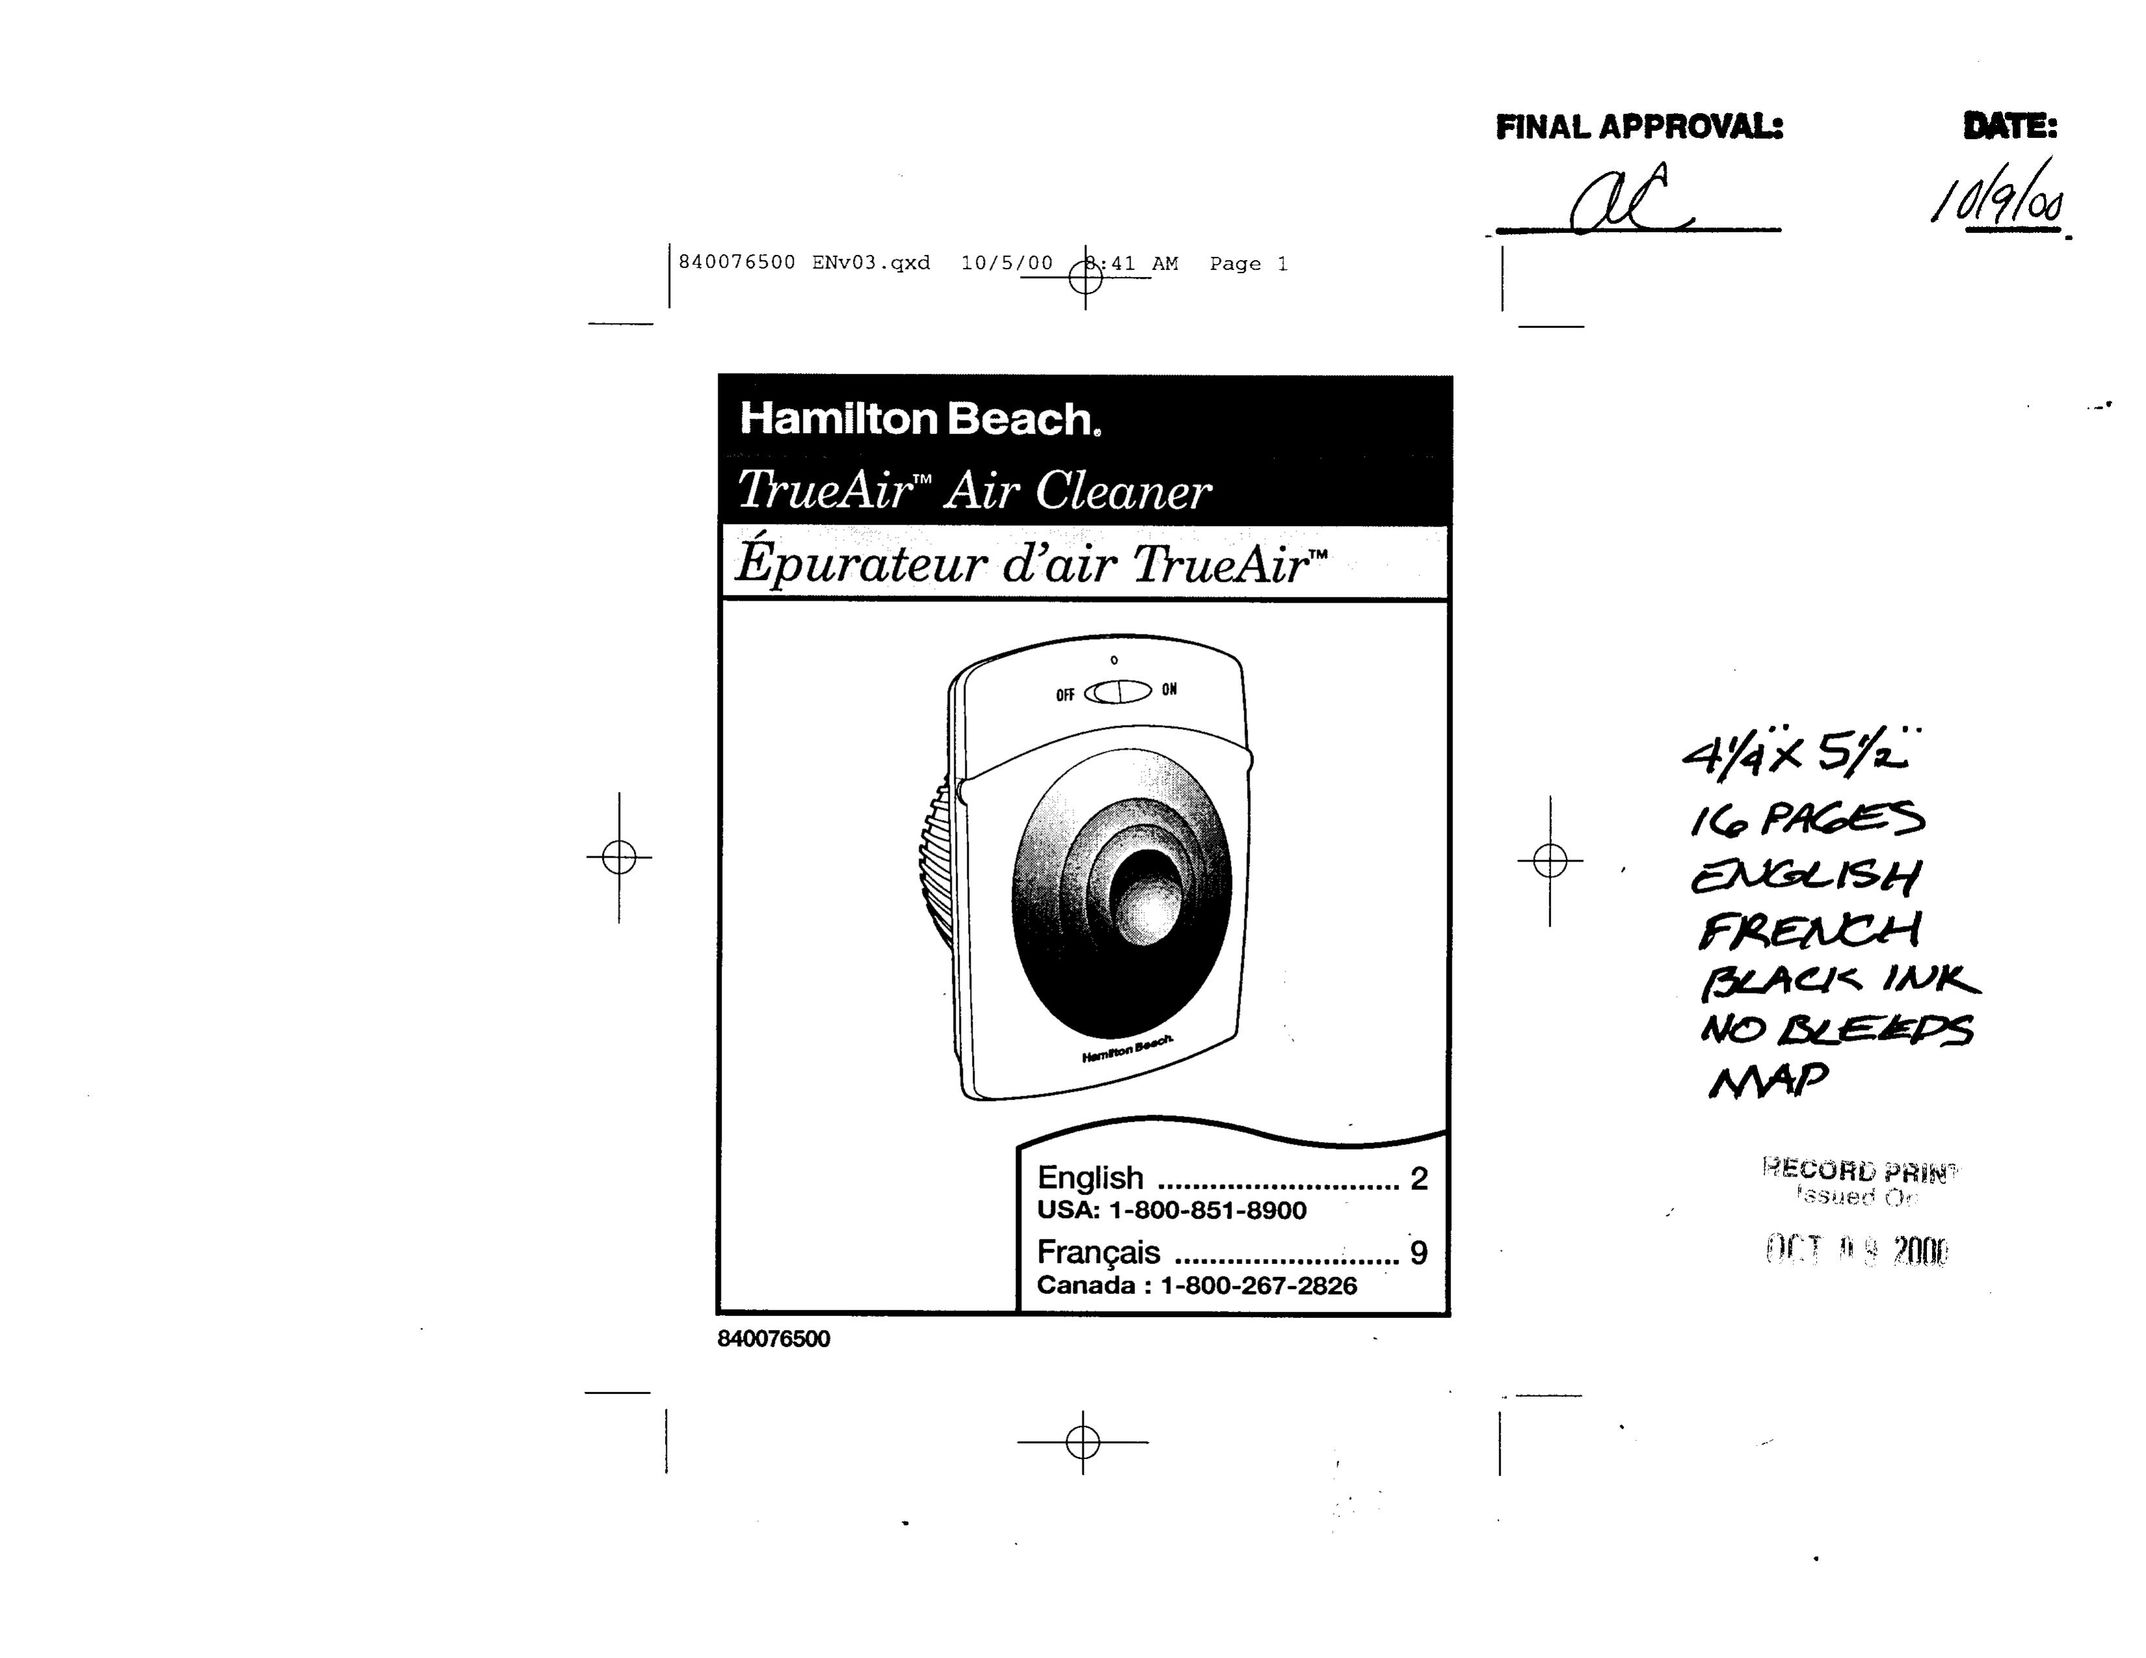 Hamilton Beach 04255 Air Cleaner User Manual